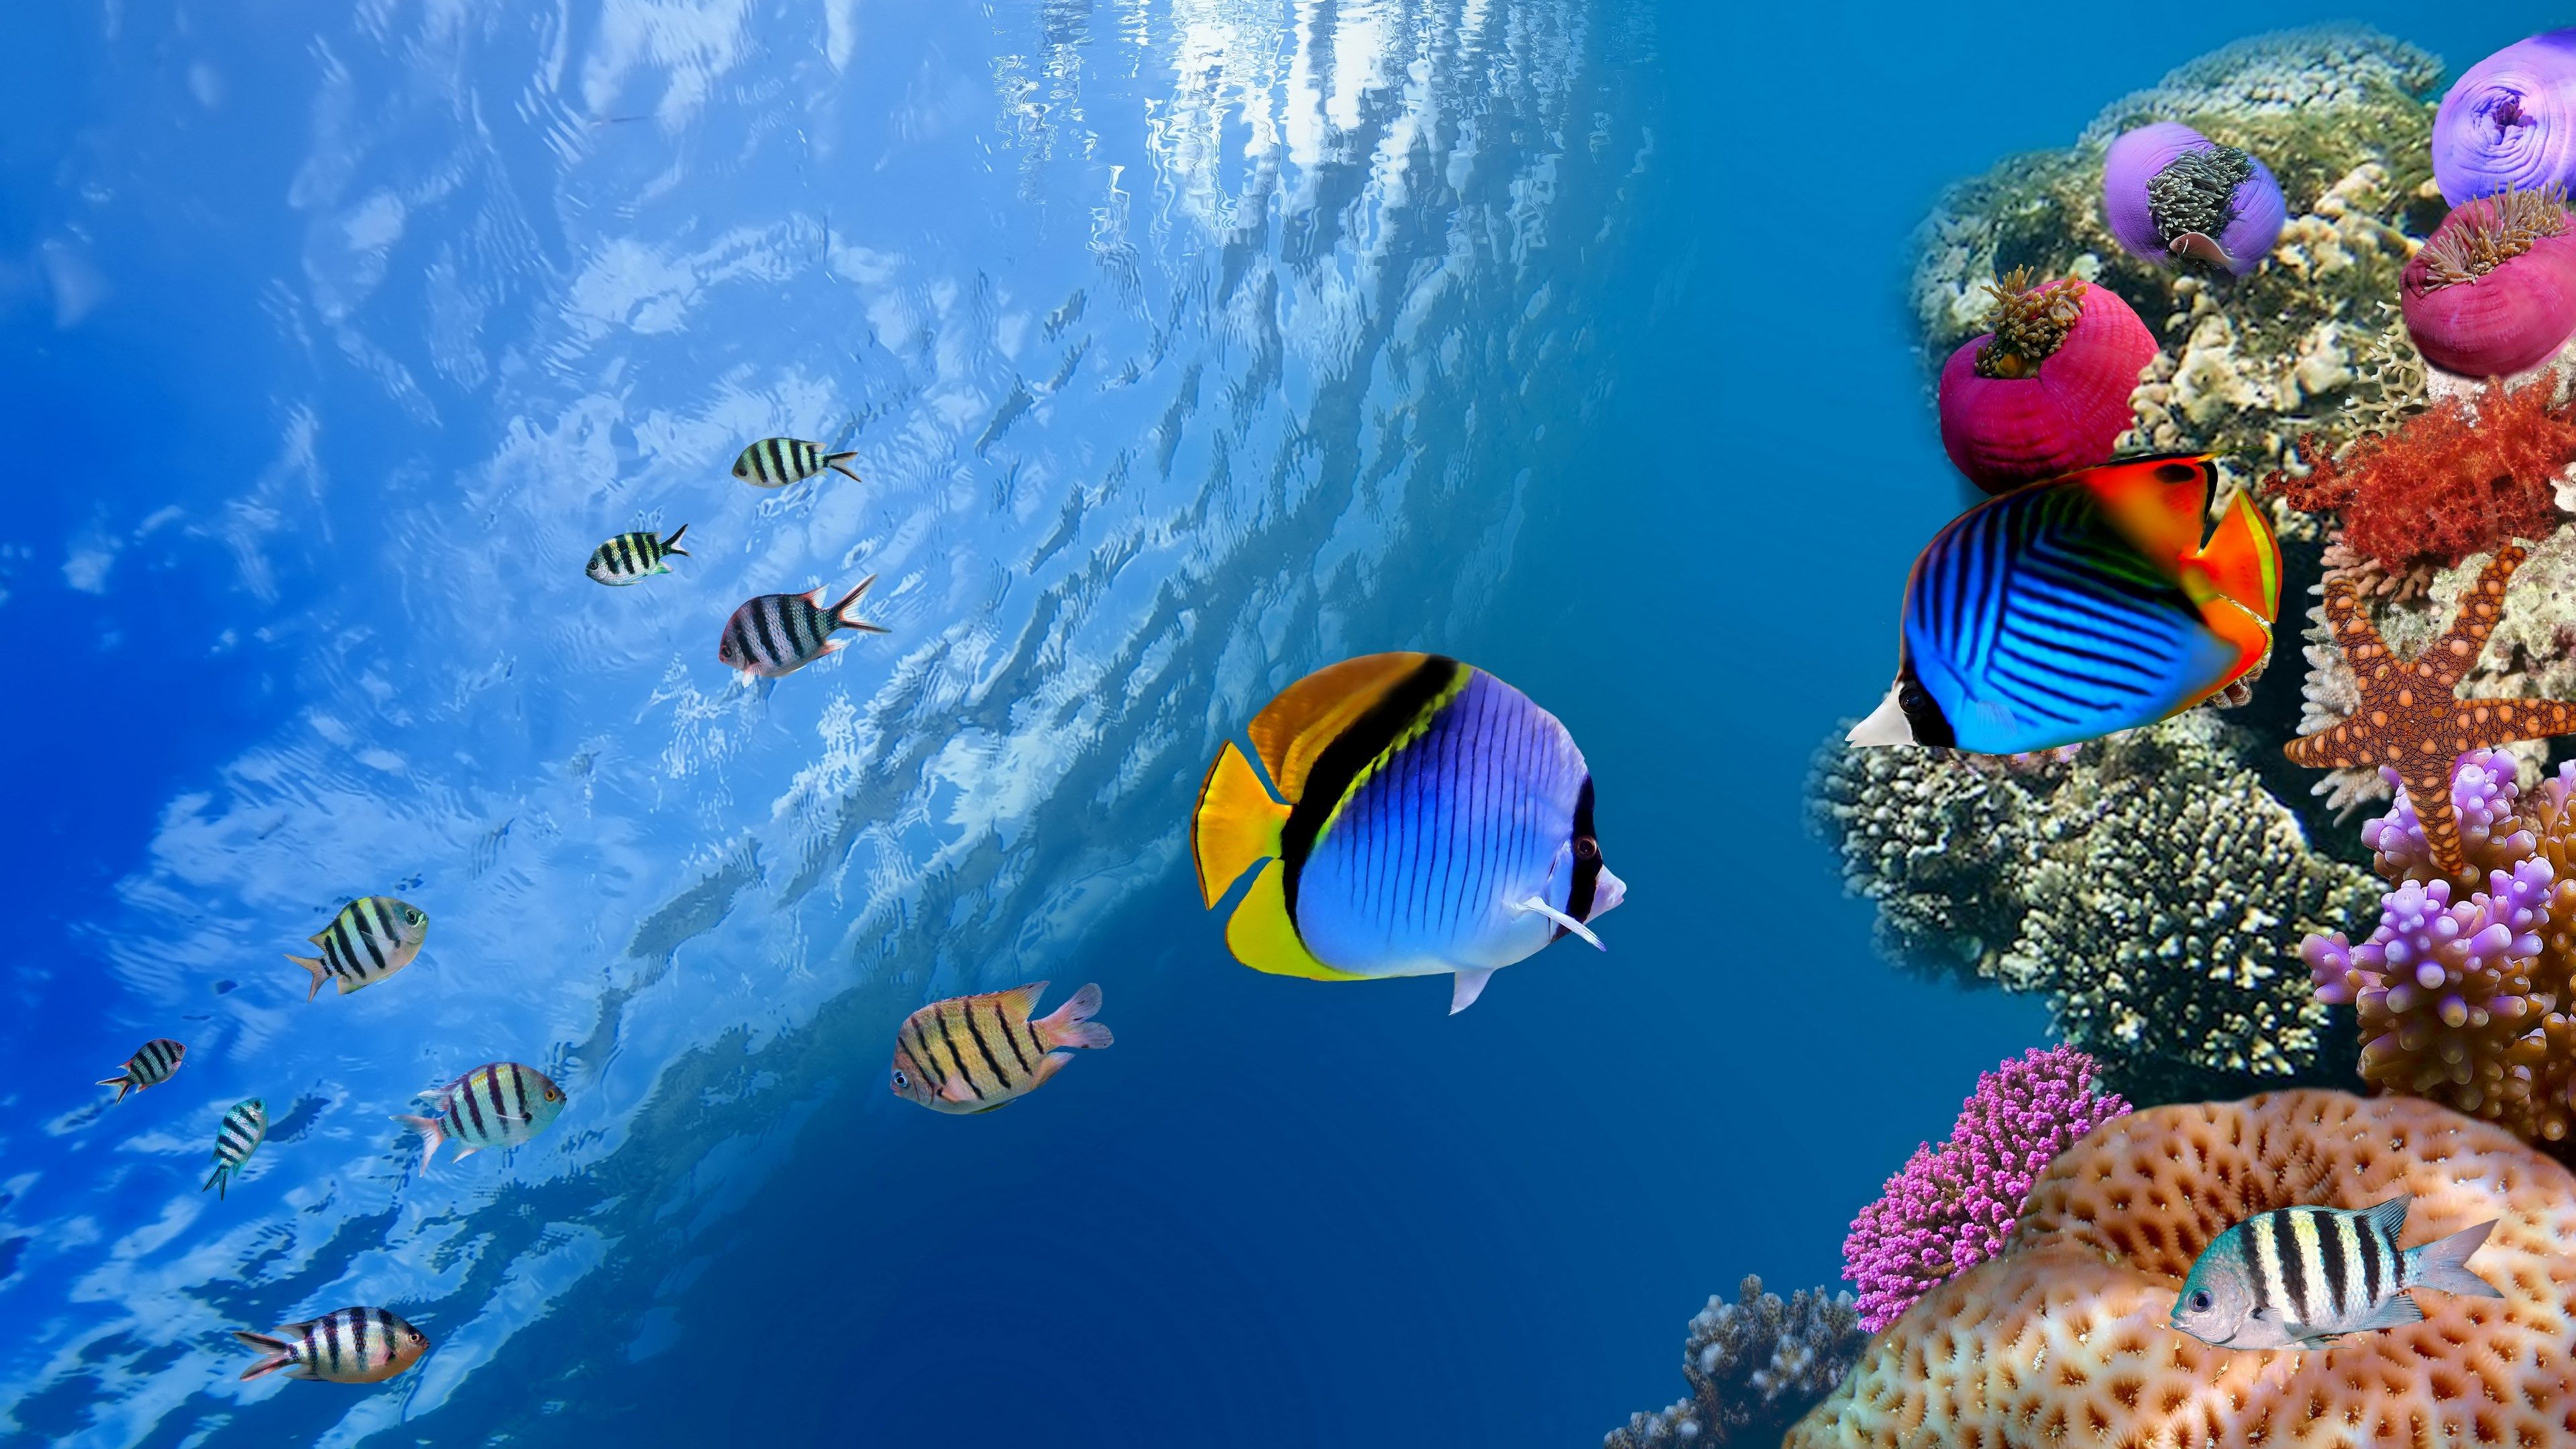 coral reef desktop background HD. Beautiful coral reef